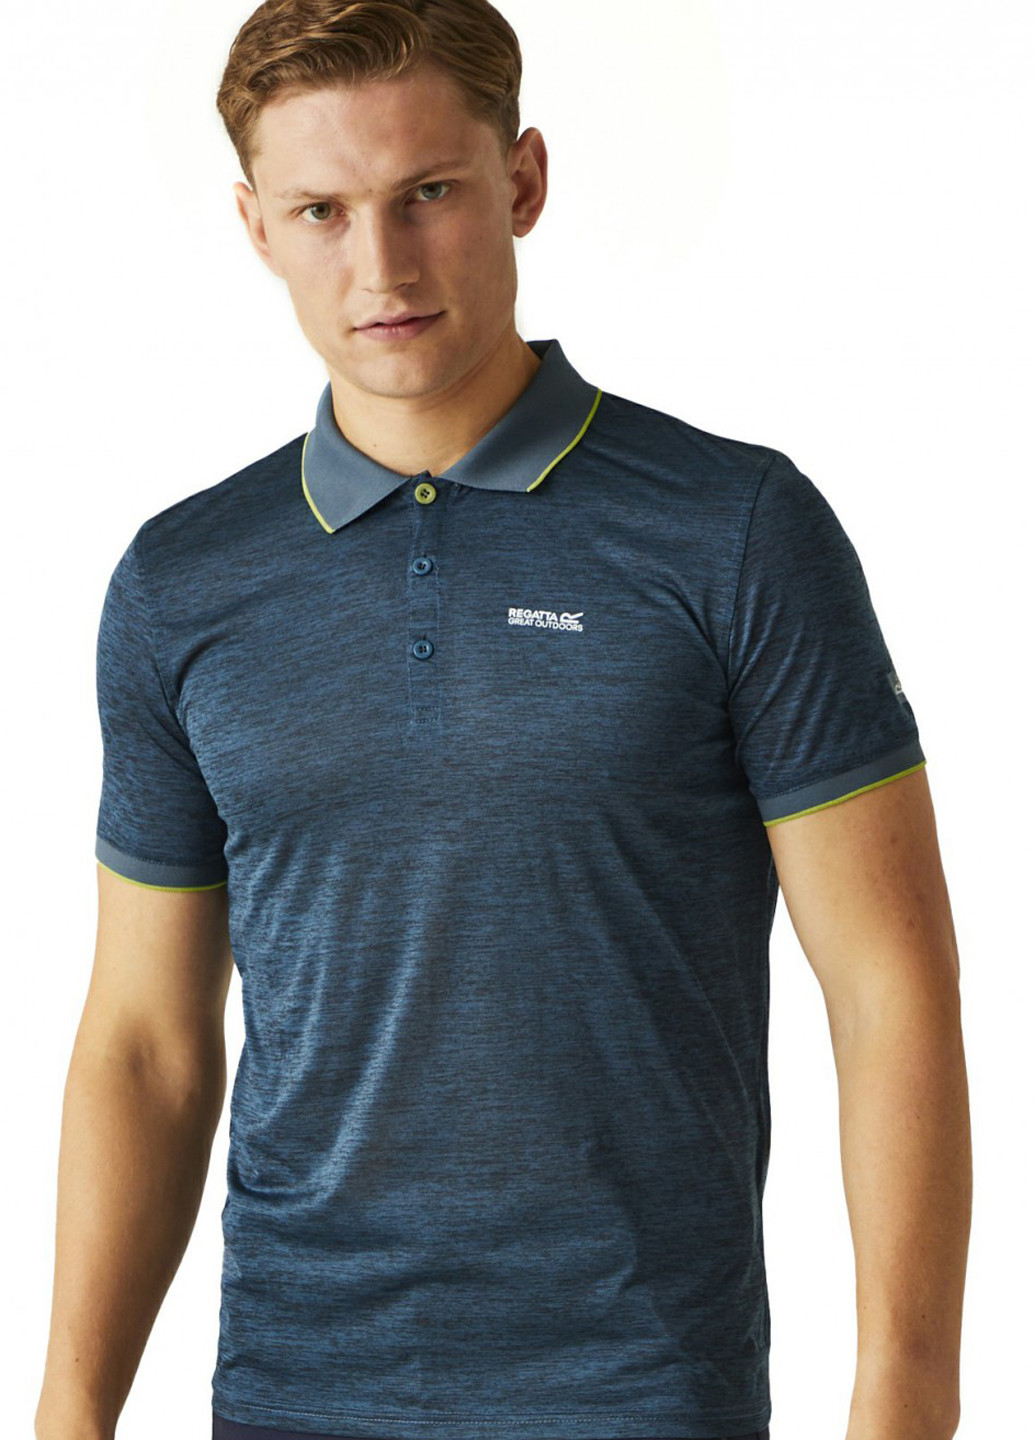 Синяя футболка-поло для мужчин Regatta меланжевая